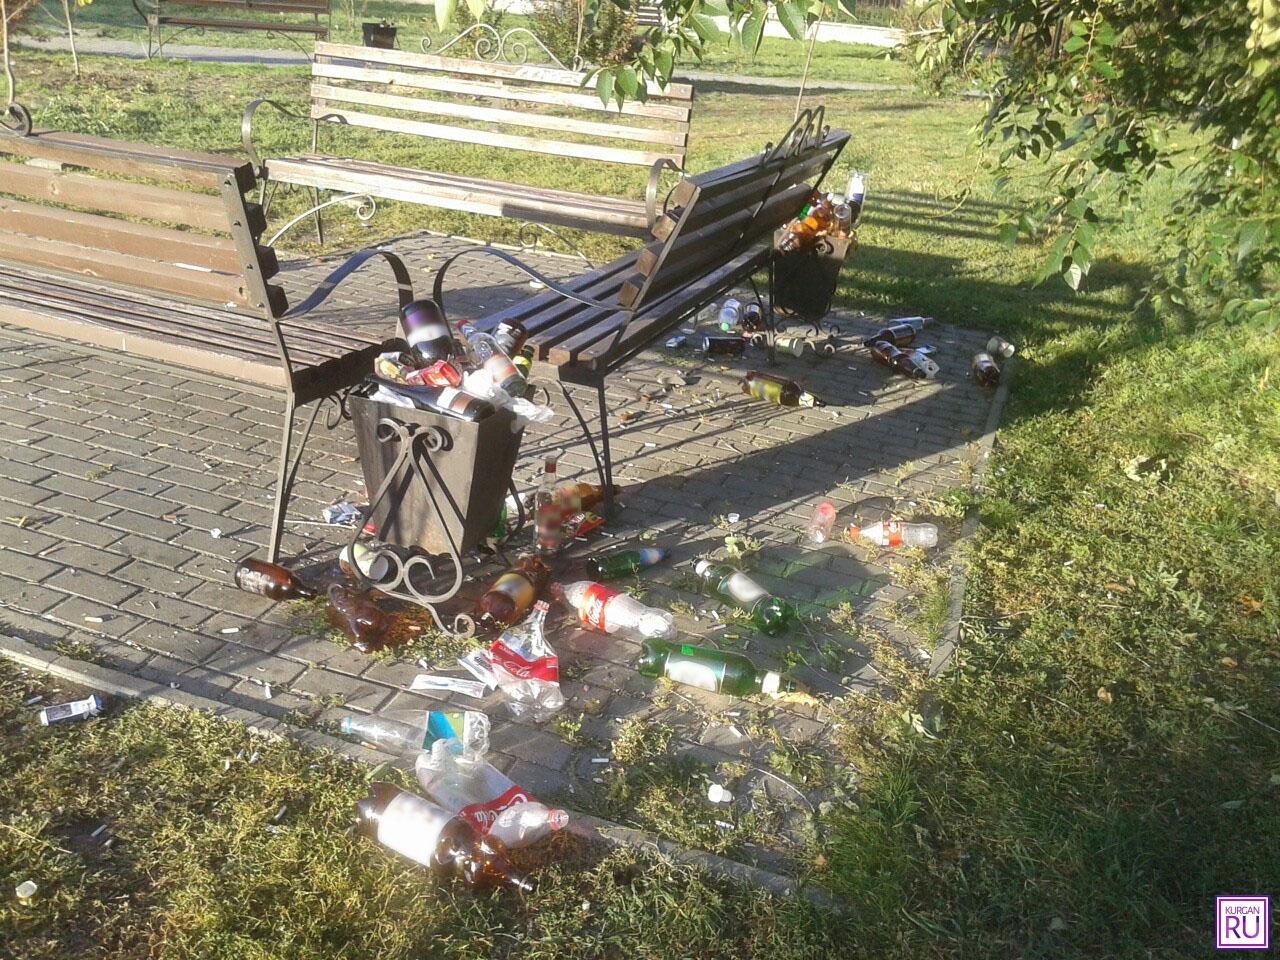 Фото из группы «Инцидент/Курган» соцсети «ВКонтакте».